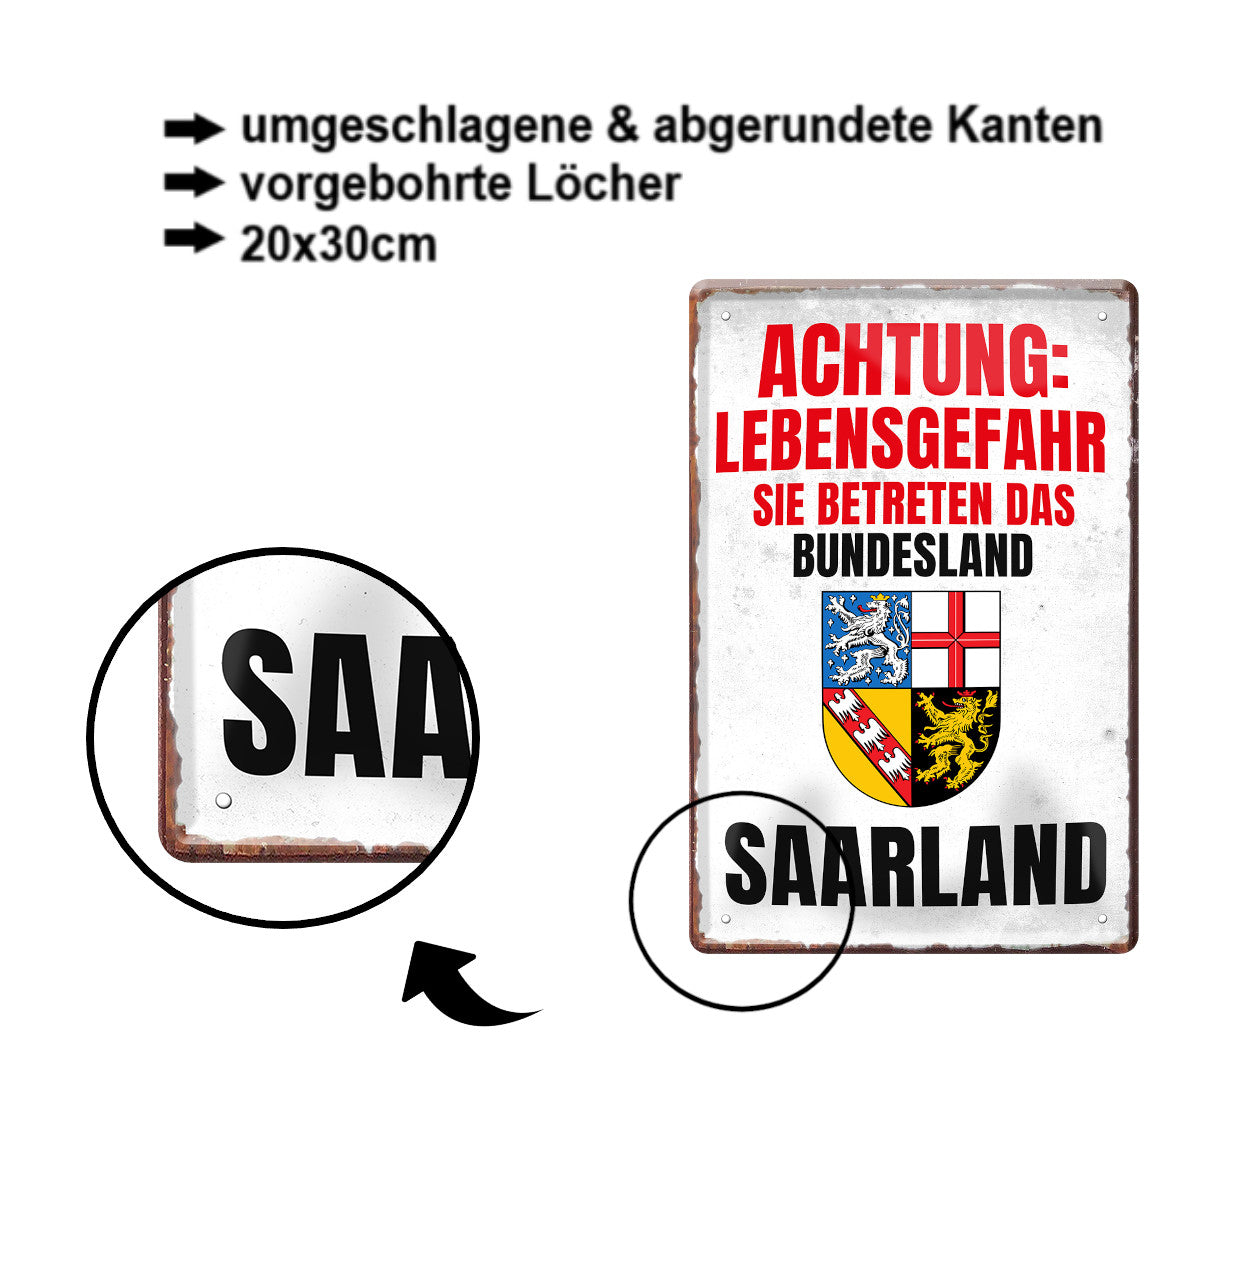 Blechschild ''Achtung Lebensgefahr Saarland'' 20x30cm